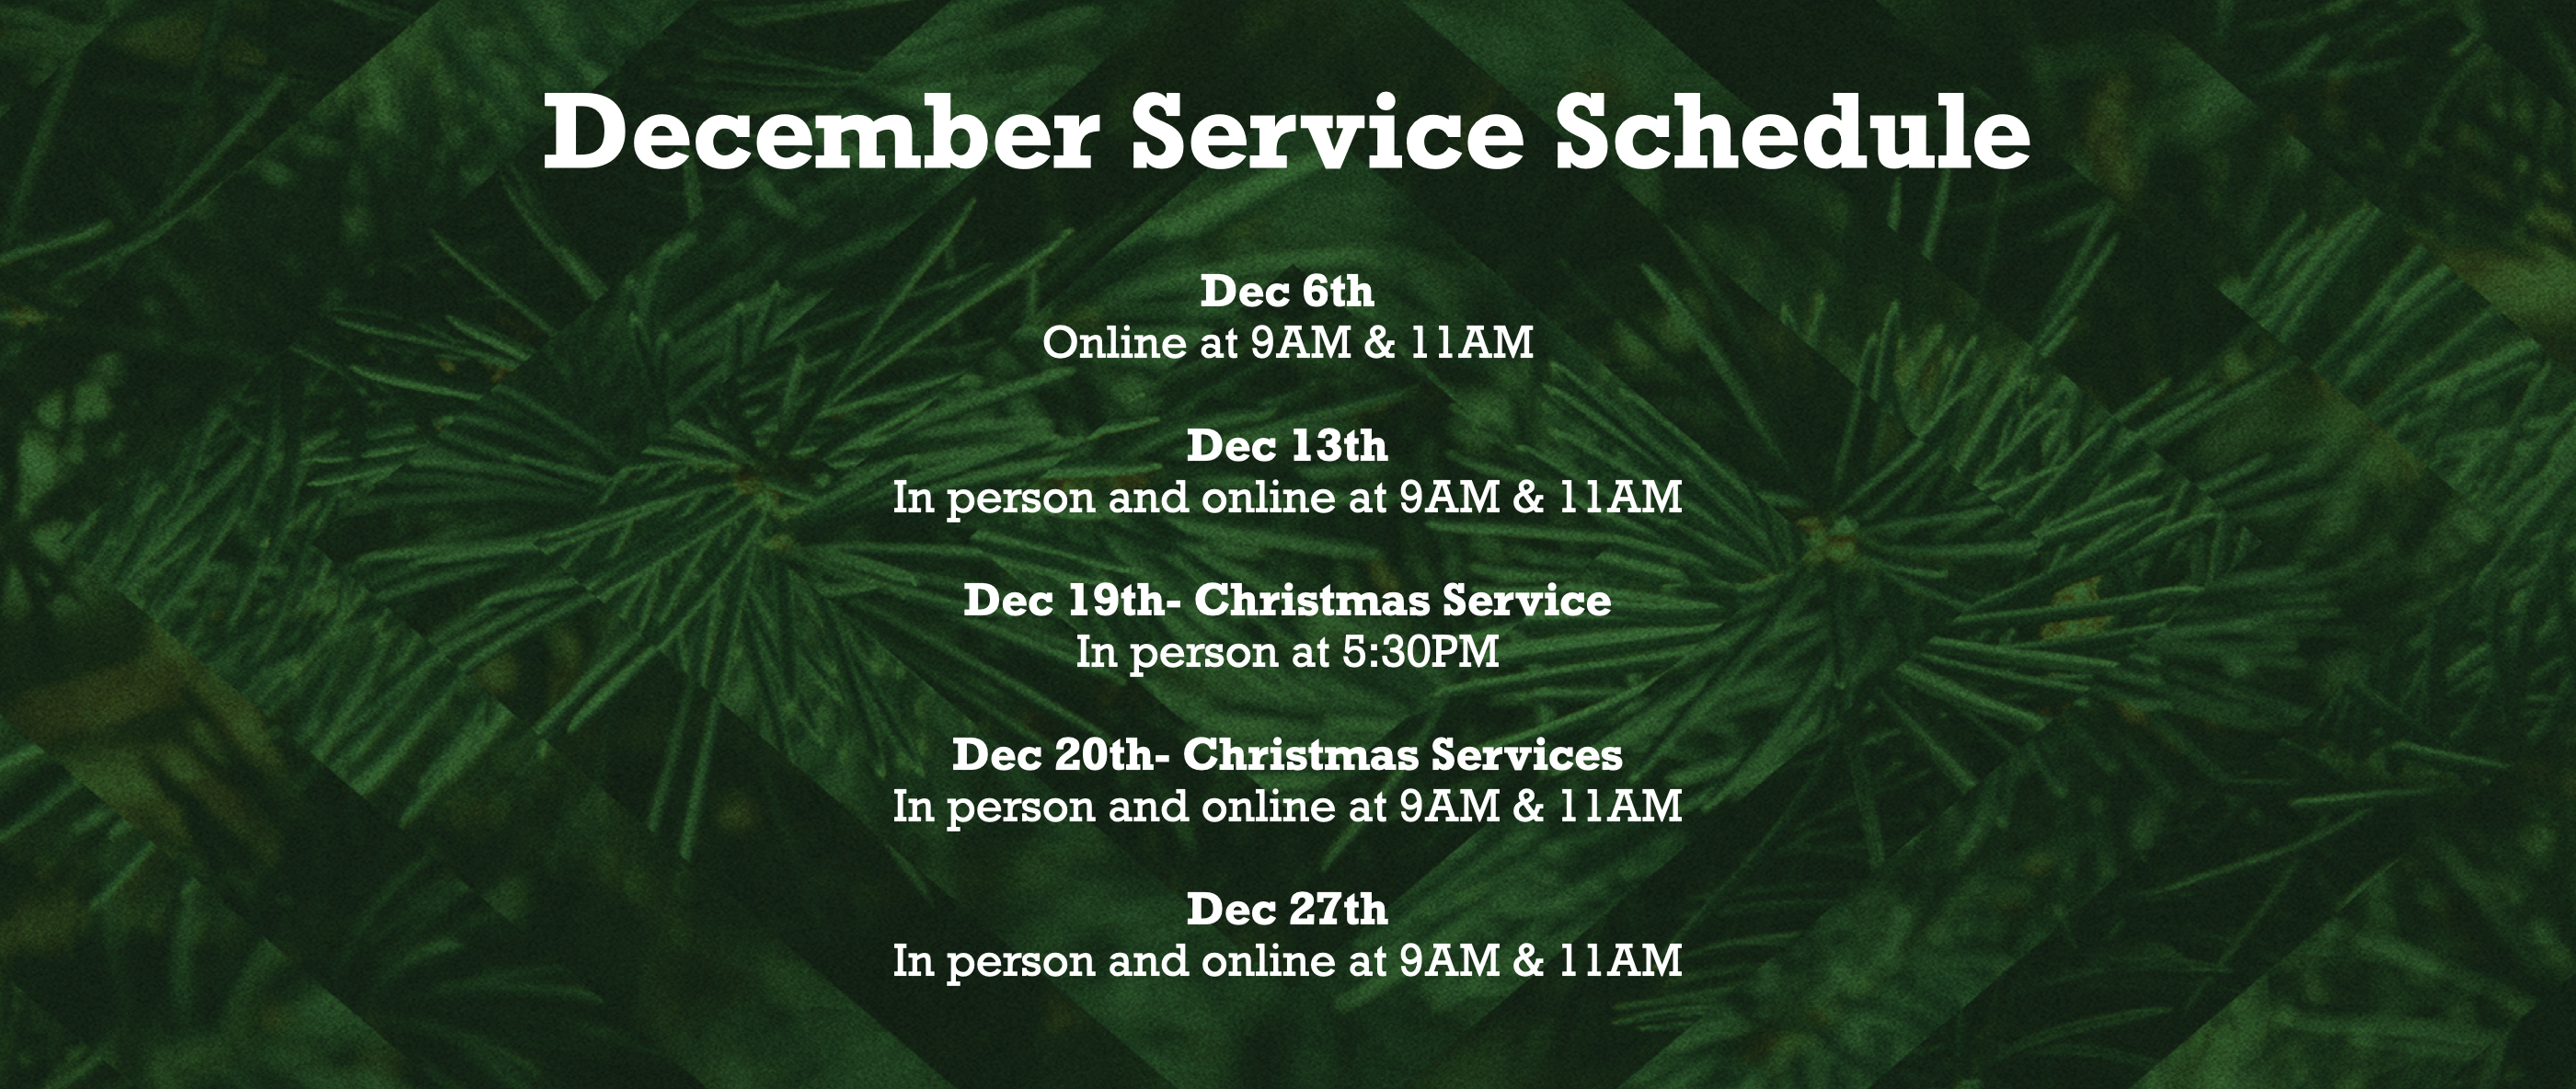 December schedule web banner.001